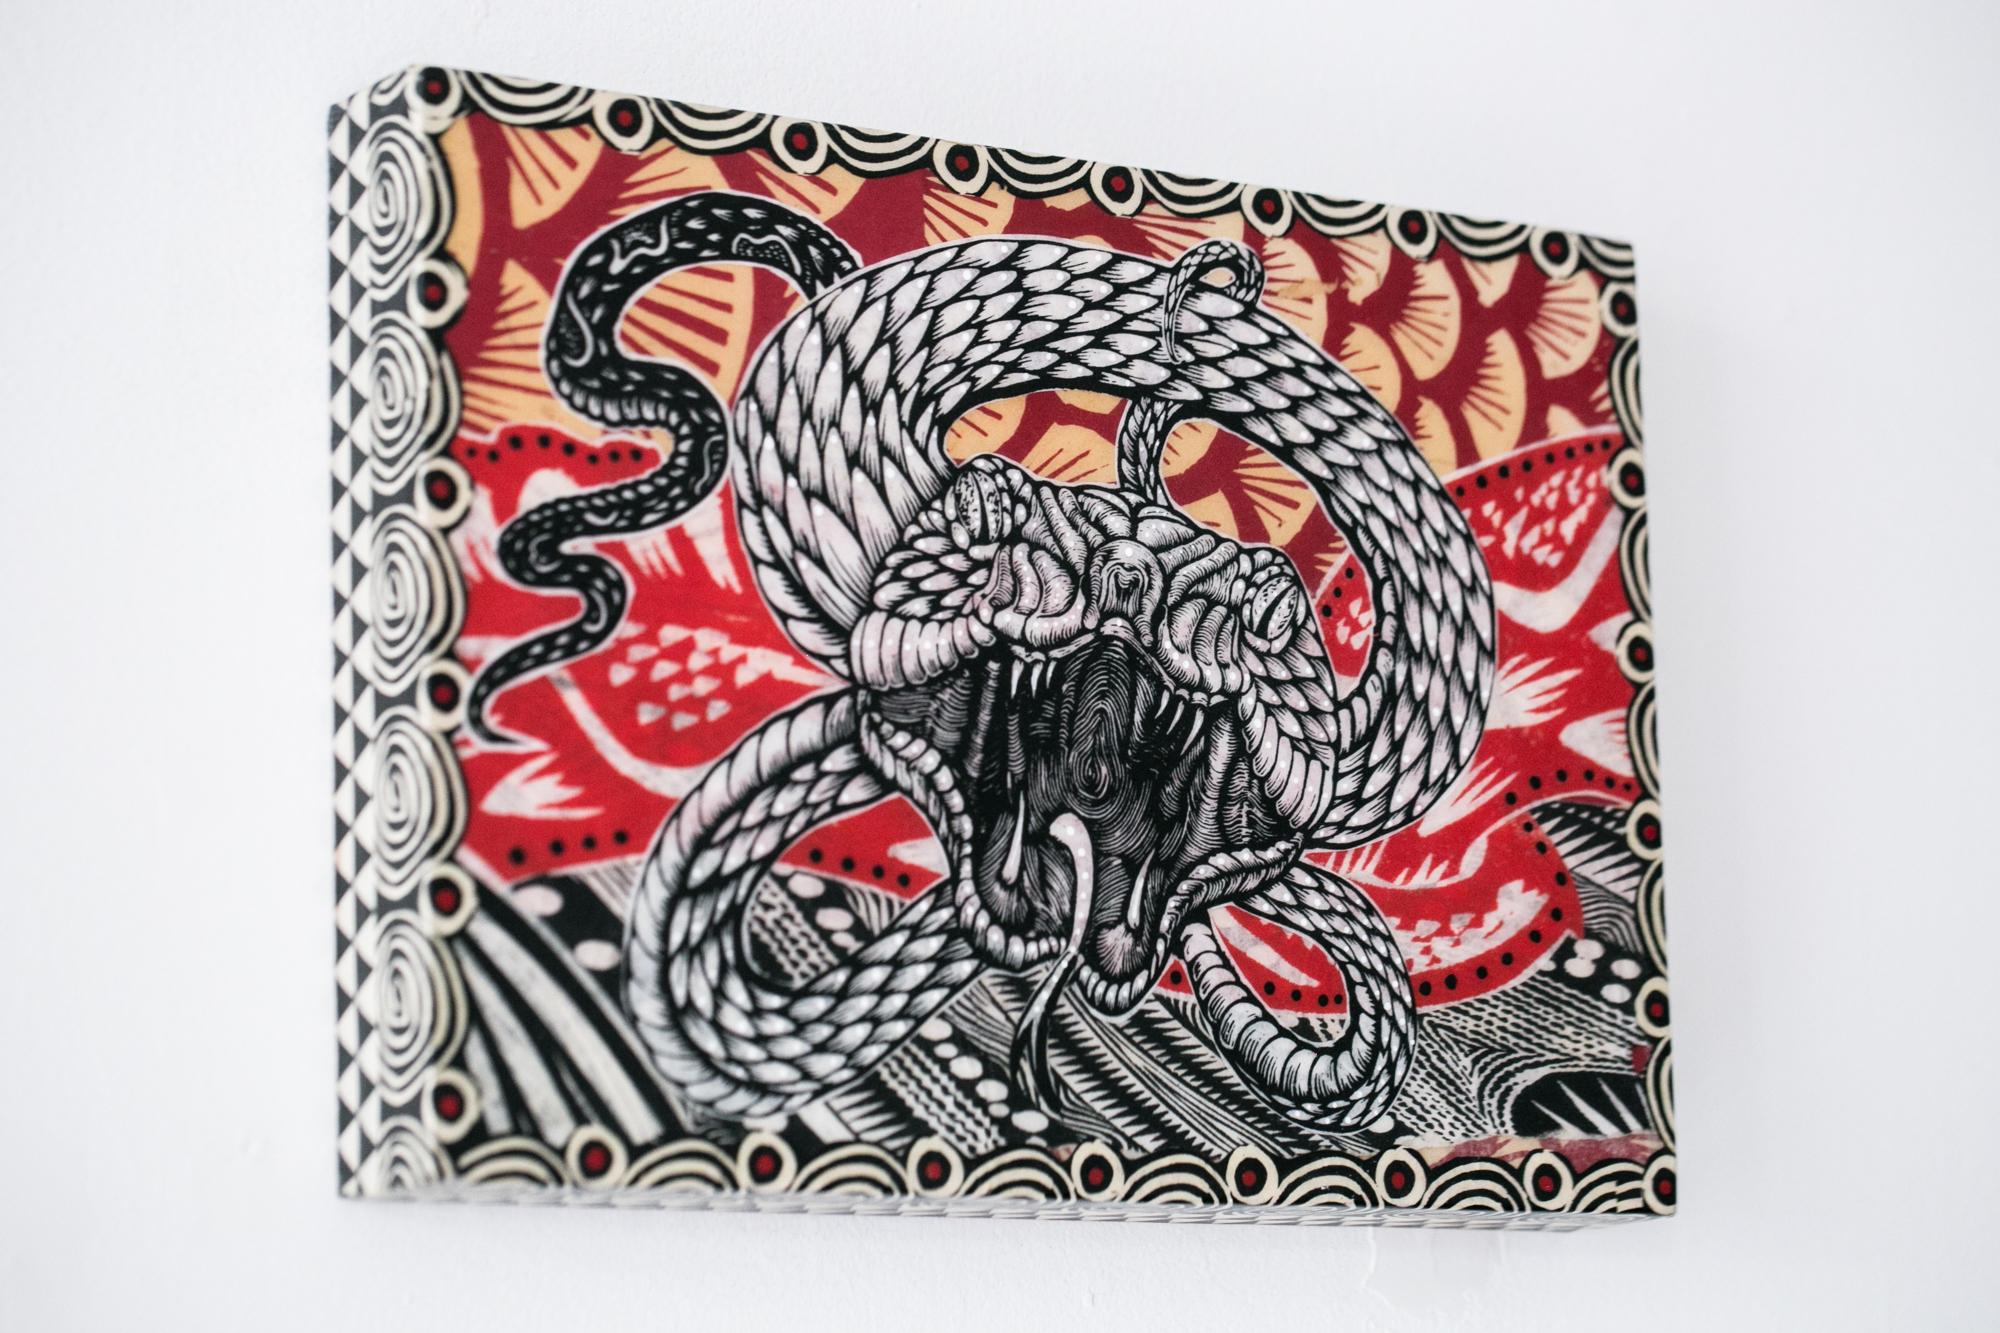 Midgard Serpent - Contemporary Mixed Media Art by Dennis McNett